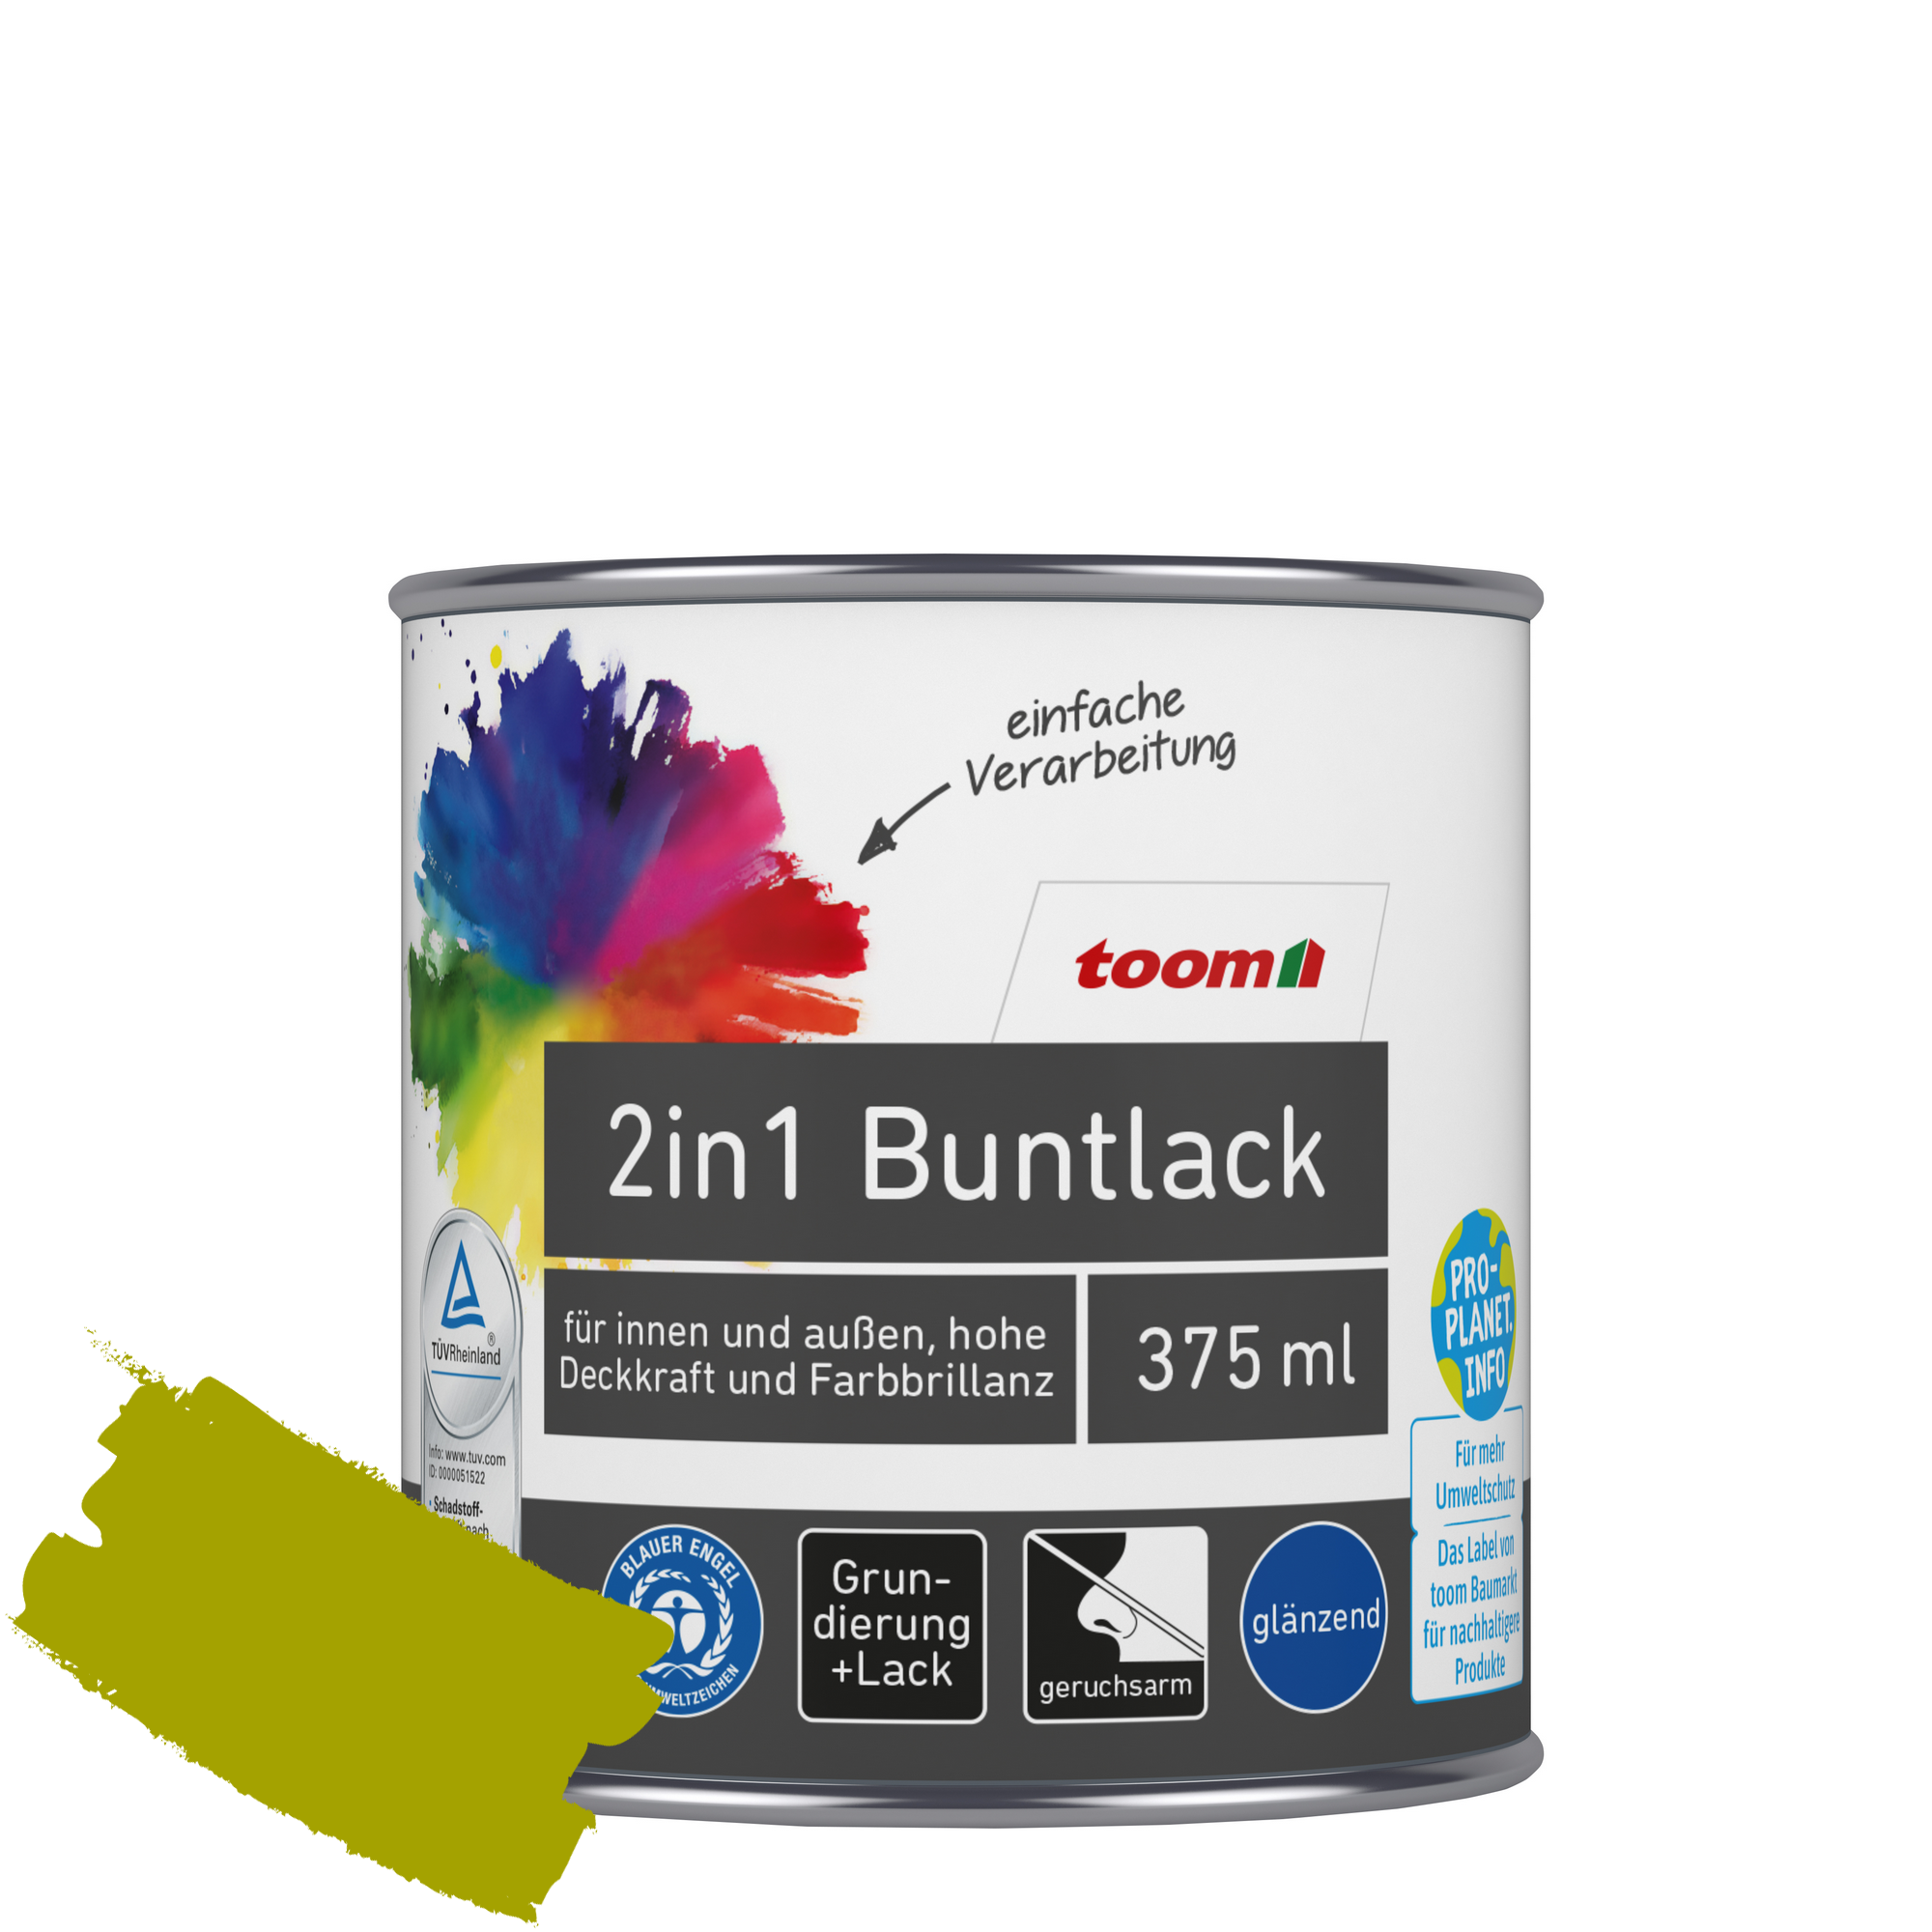 2in1 Buntlack 'Frühlingswiese' limettengrün glänzend 375 ml + product picture